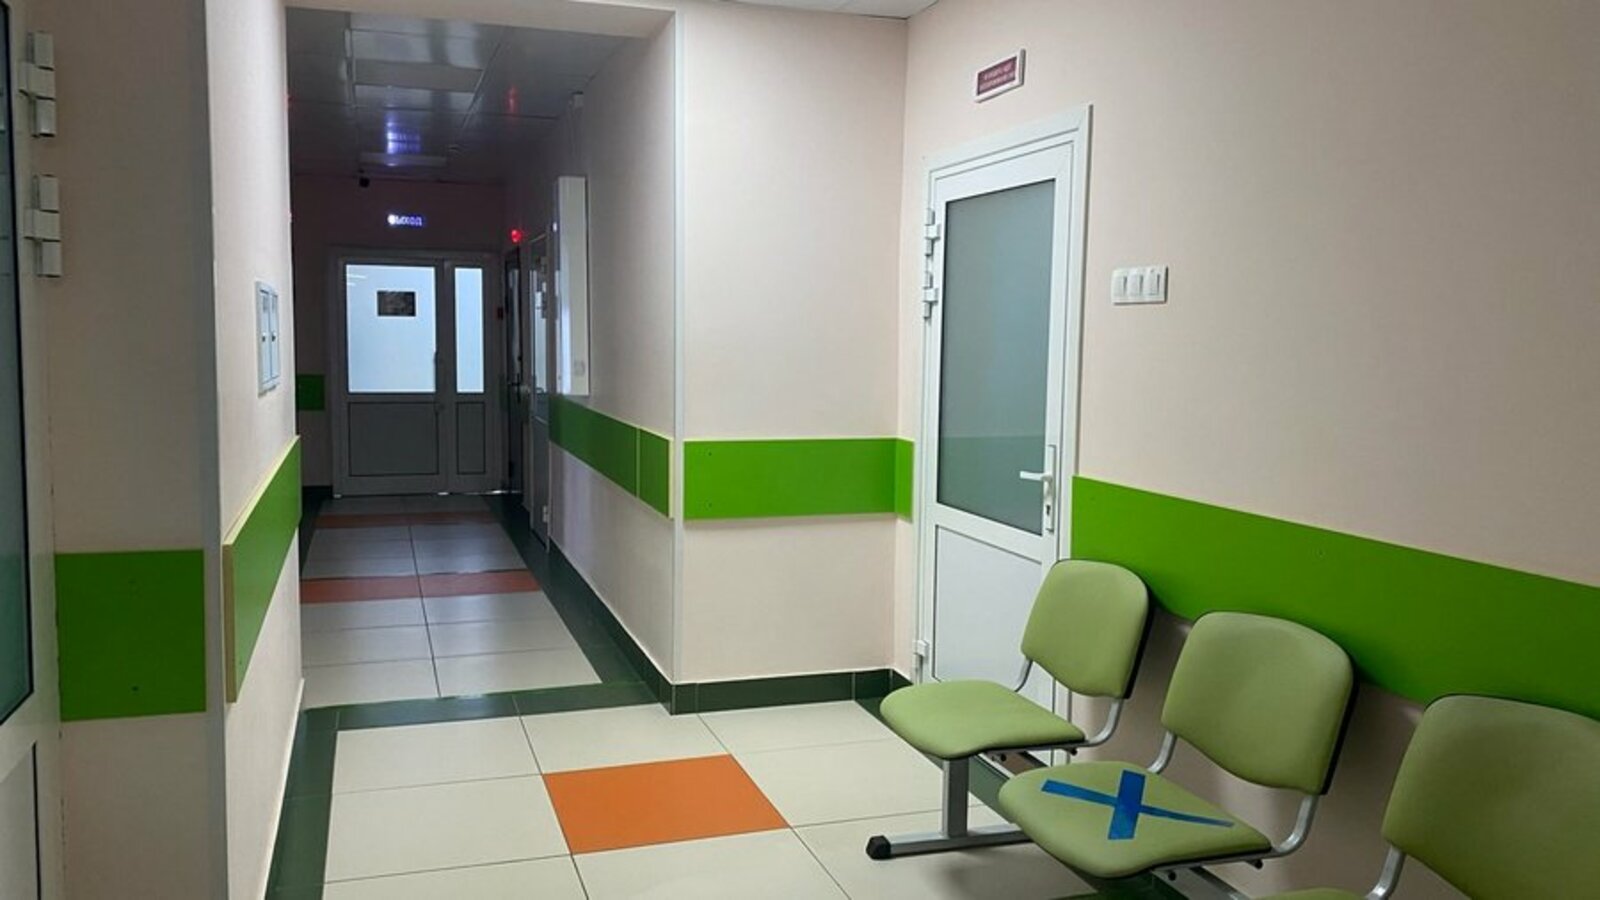 Три больницы Башкирии стали финалистами во всероссийском конкурсе